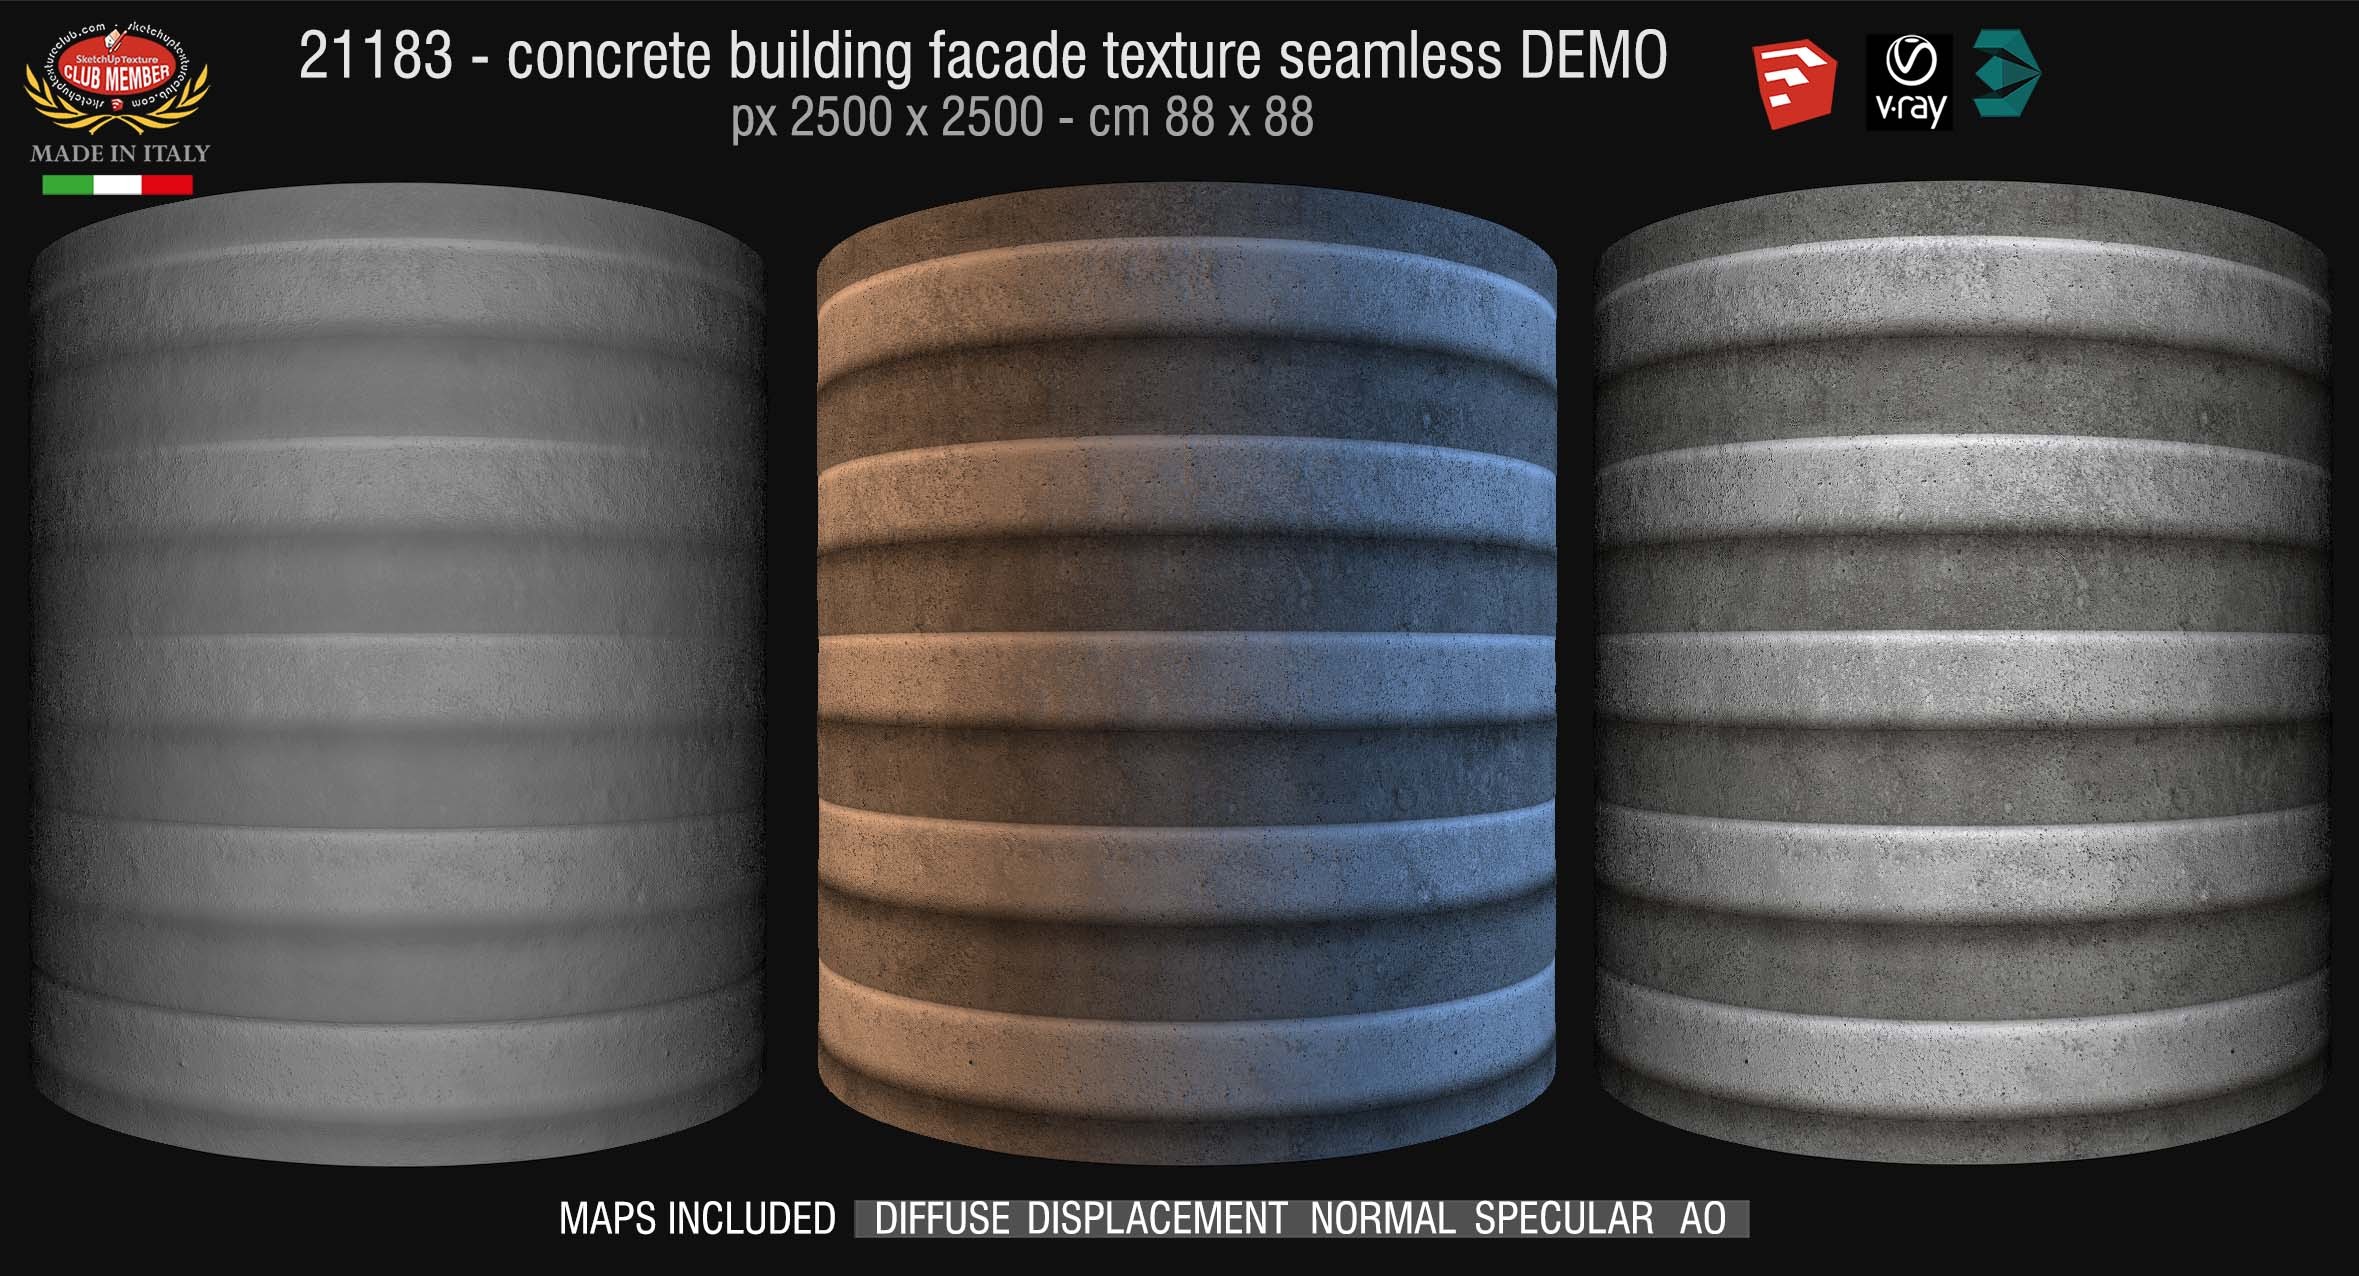 21183 Concrete building facade texture + Maps DEMO